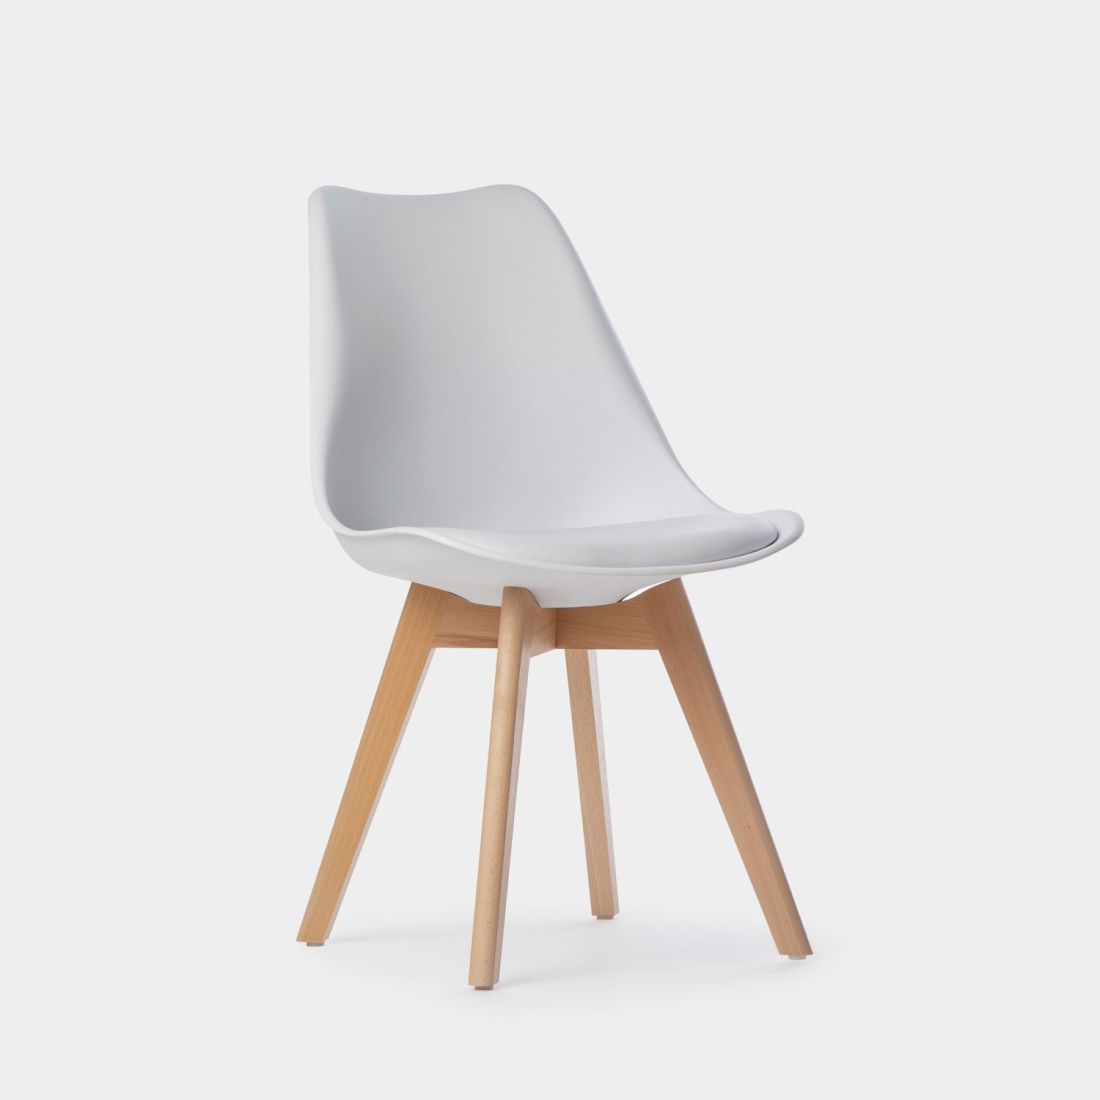 La silla de comedor en polipropileno Kler es una de esas sillas que combina a la perfección un diseño elegante y refinado con funcionalidad